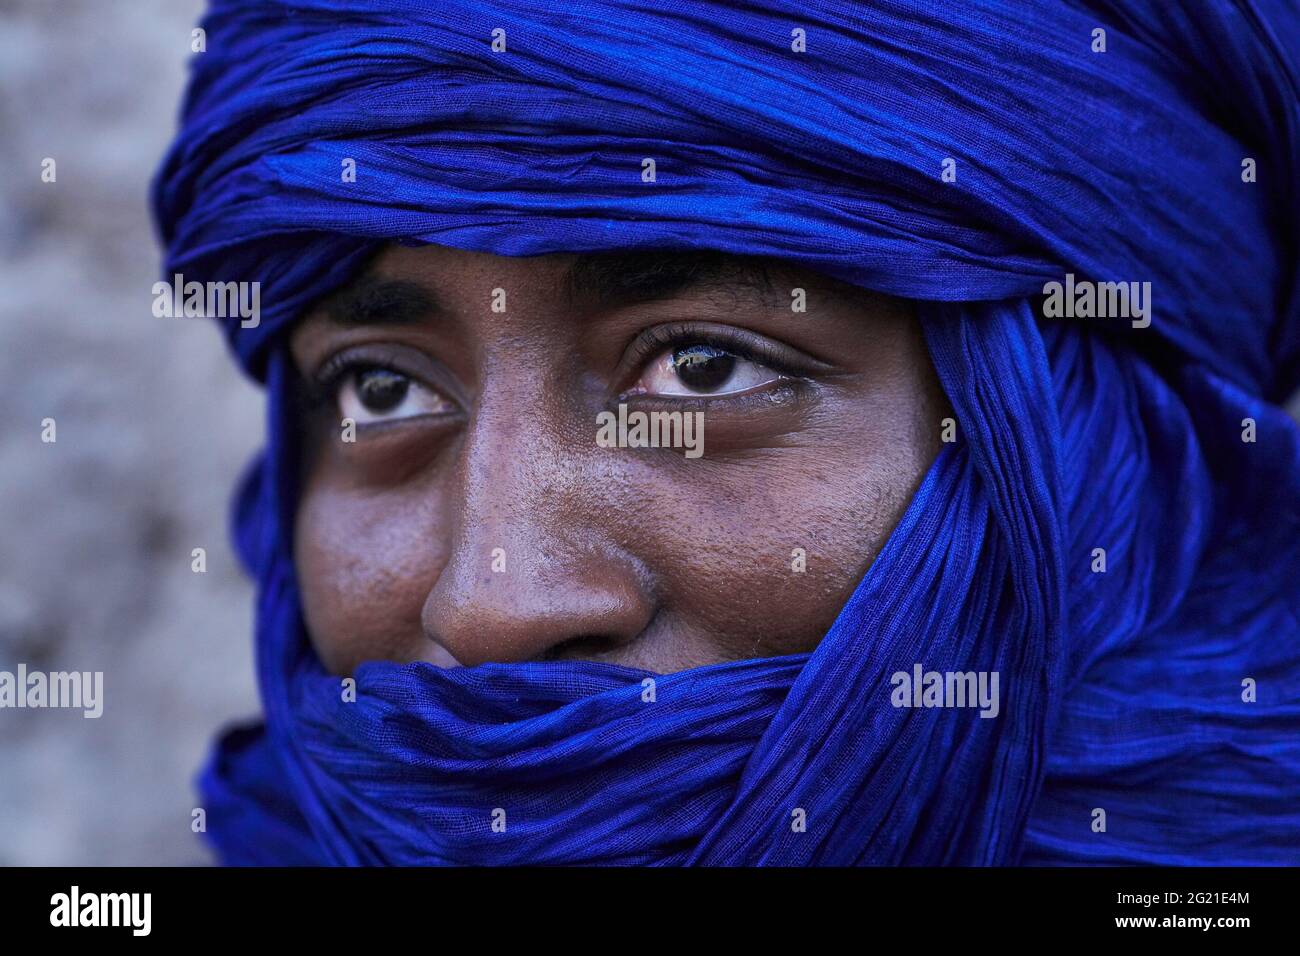 Mali, Timbuktu , Retrato de cerca del hombre tuareg con un turbante azul.Retrato de un hombre tuareg con turbante indigo Foto de stock